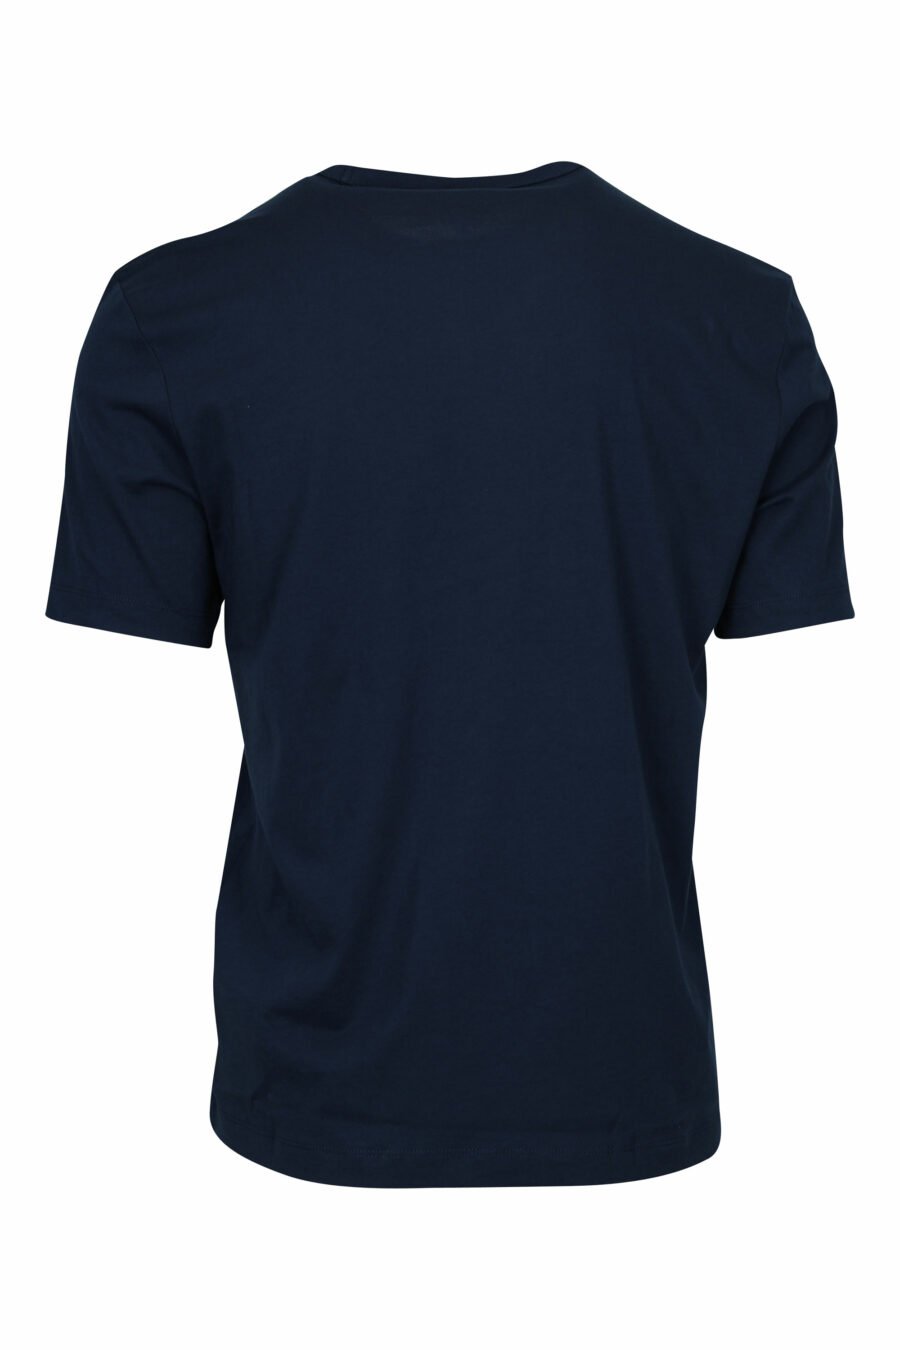 Blaues T-Shirt mit Mini-Logo bedruckte Tasche - 8058610799946 1